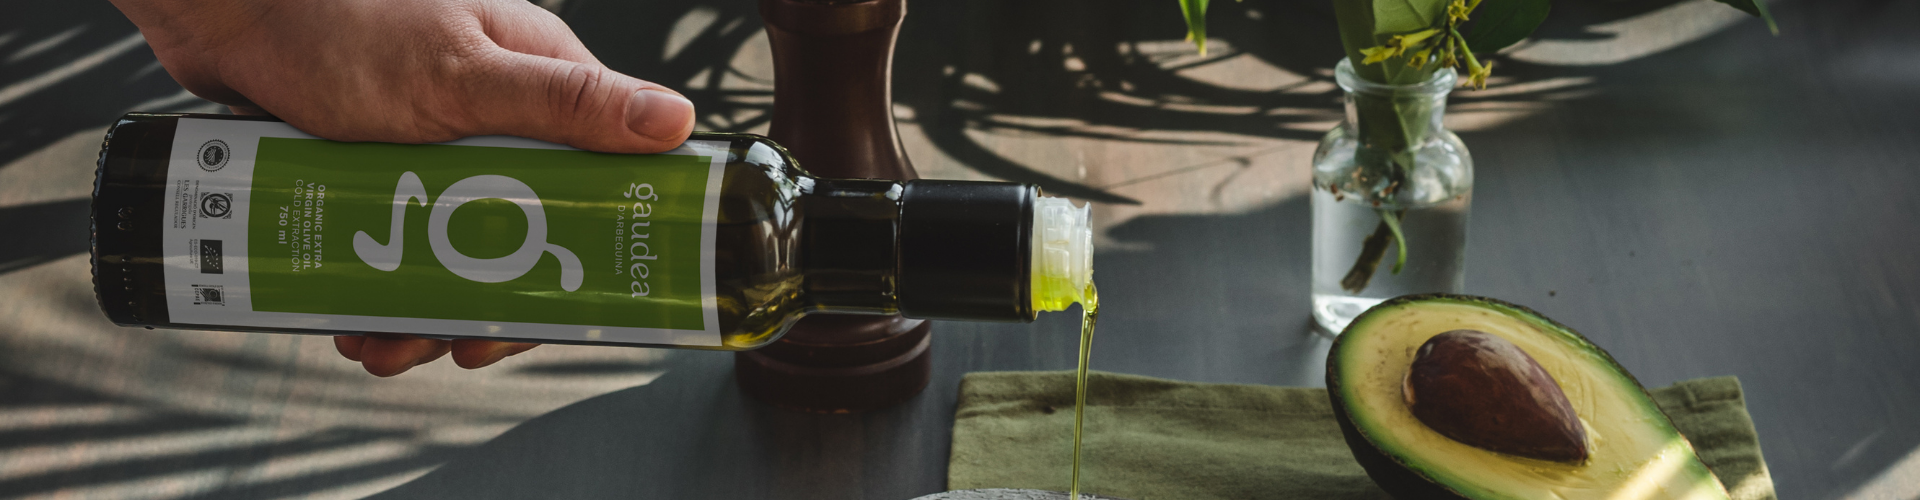 Recetas con aceite de oliva virgen extra - Gaudea